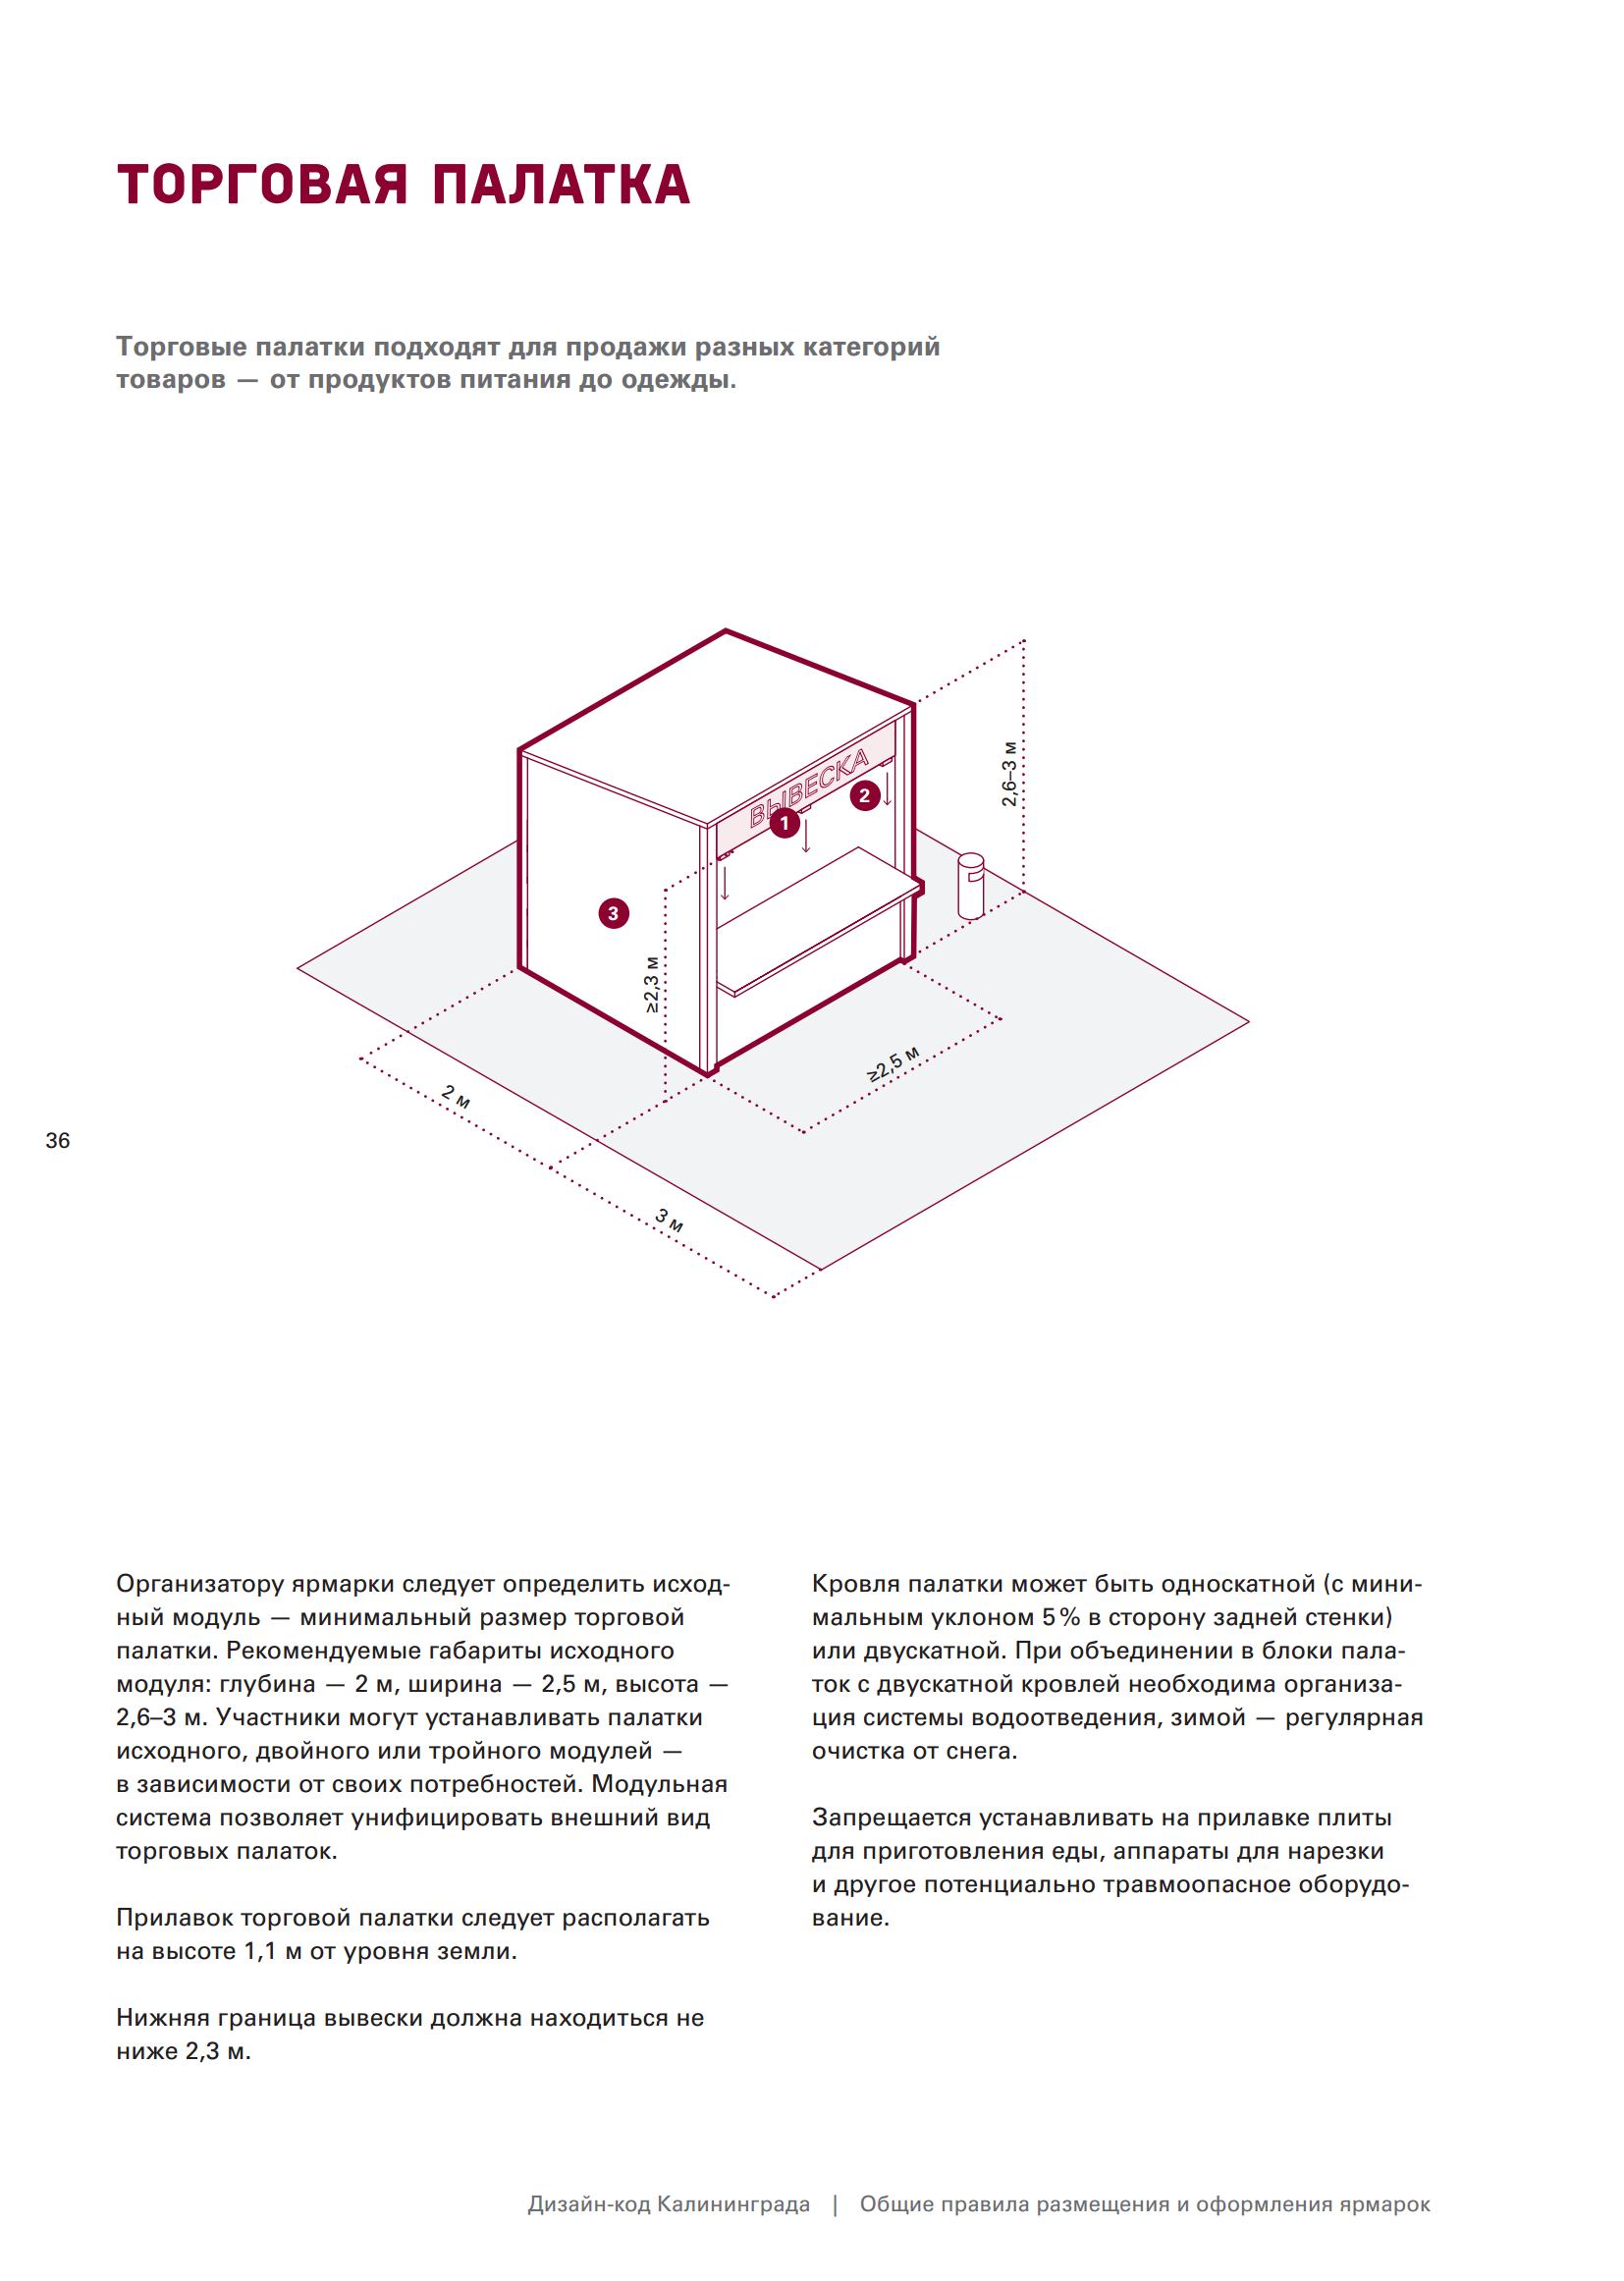 Дизайн-код Калининграда. Общие правила размещения и оформления ярмарок